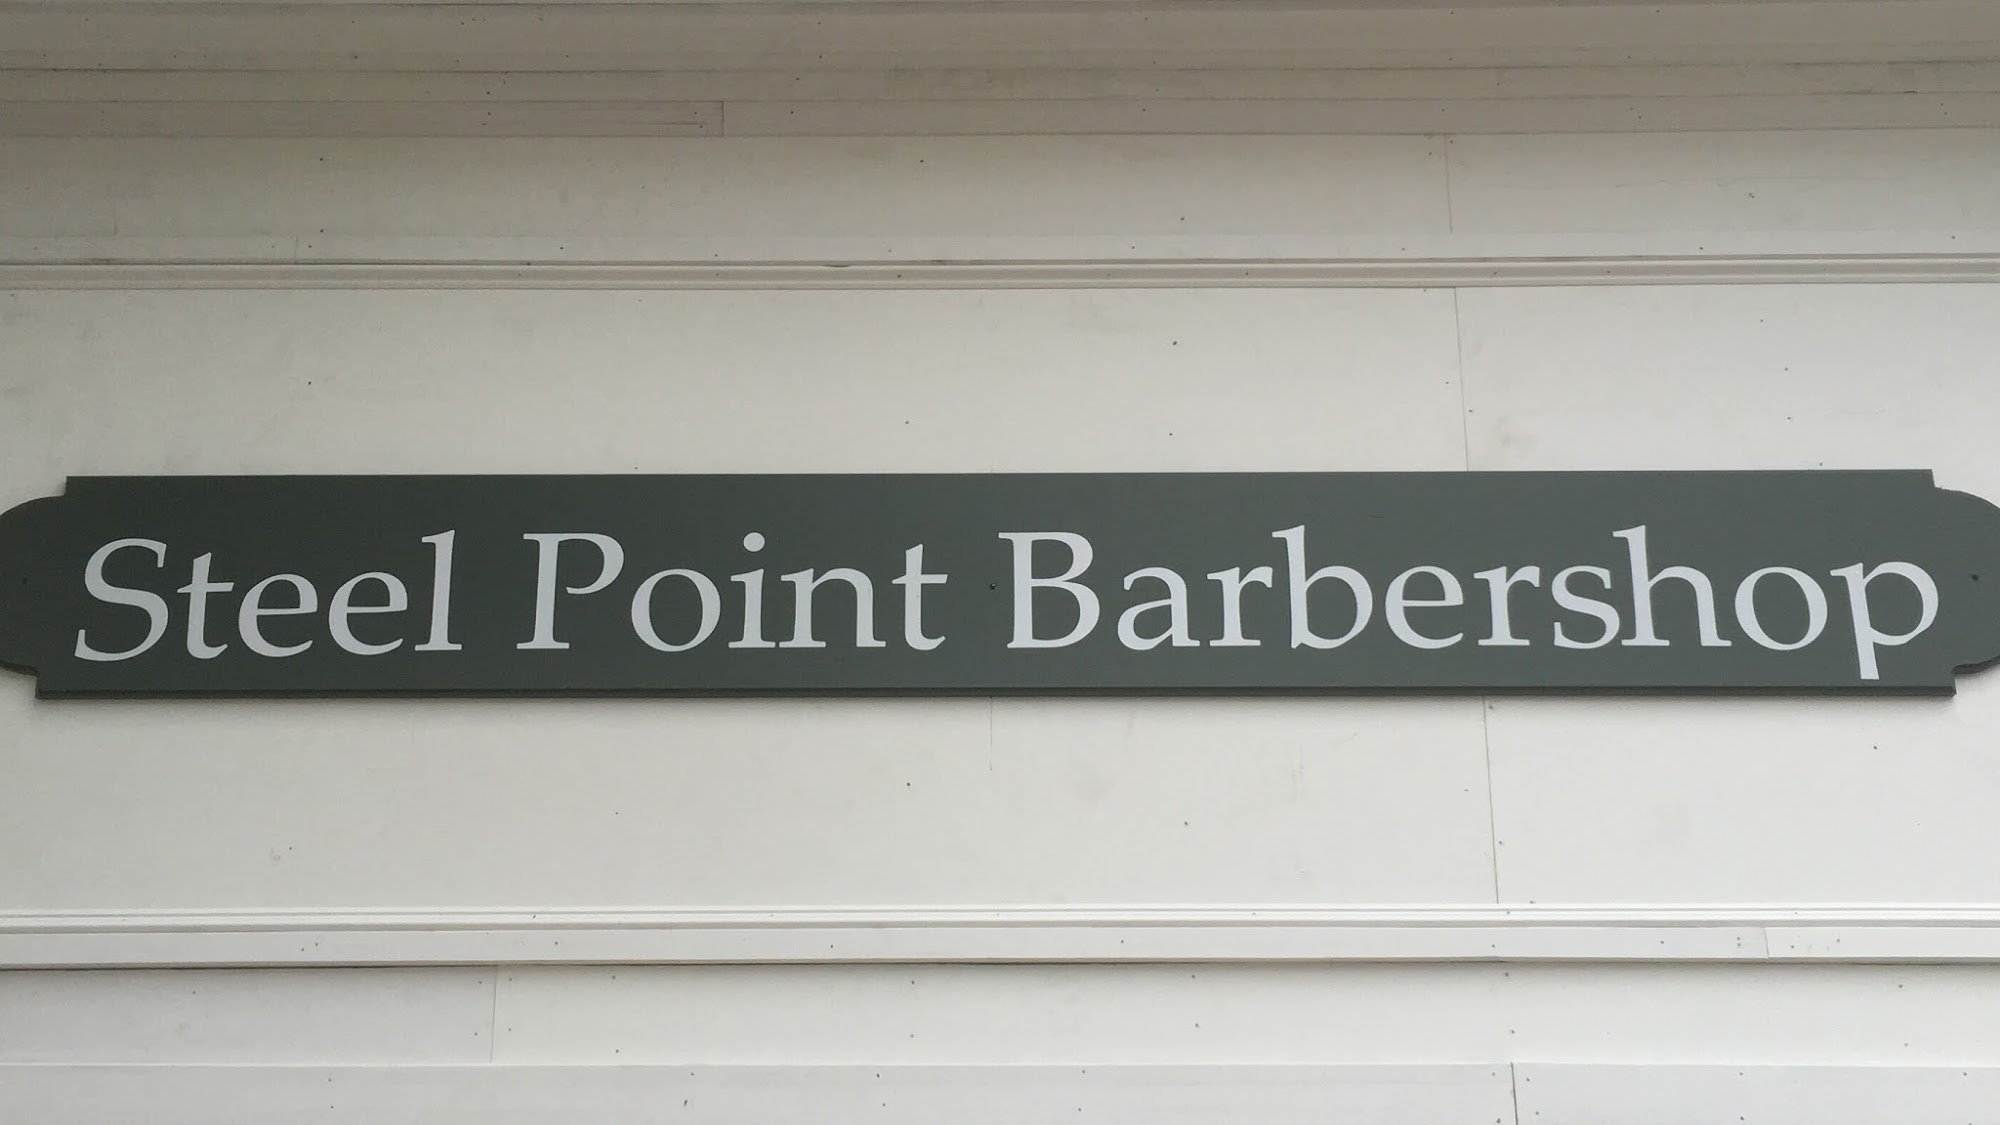 Steel Point Barbershop